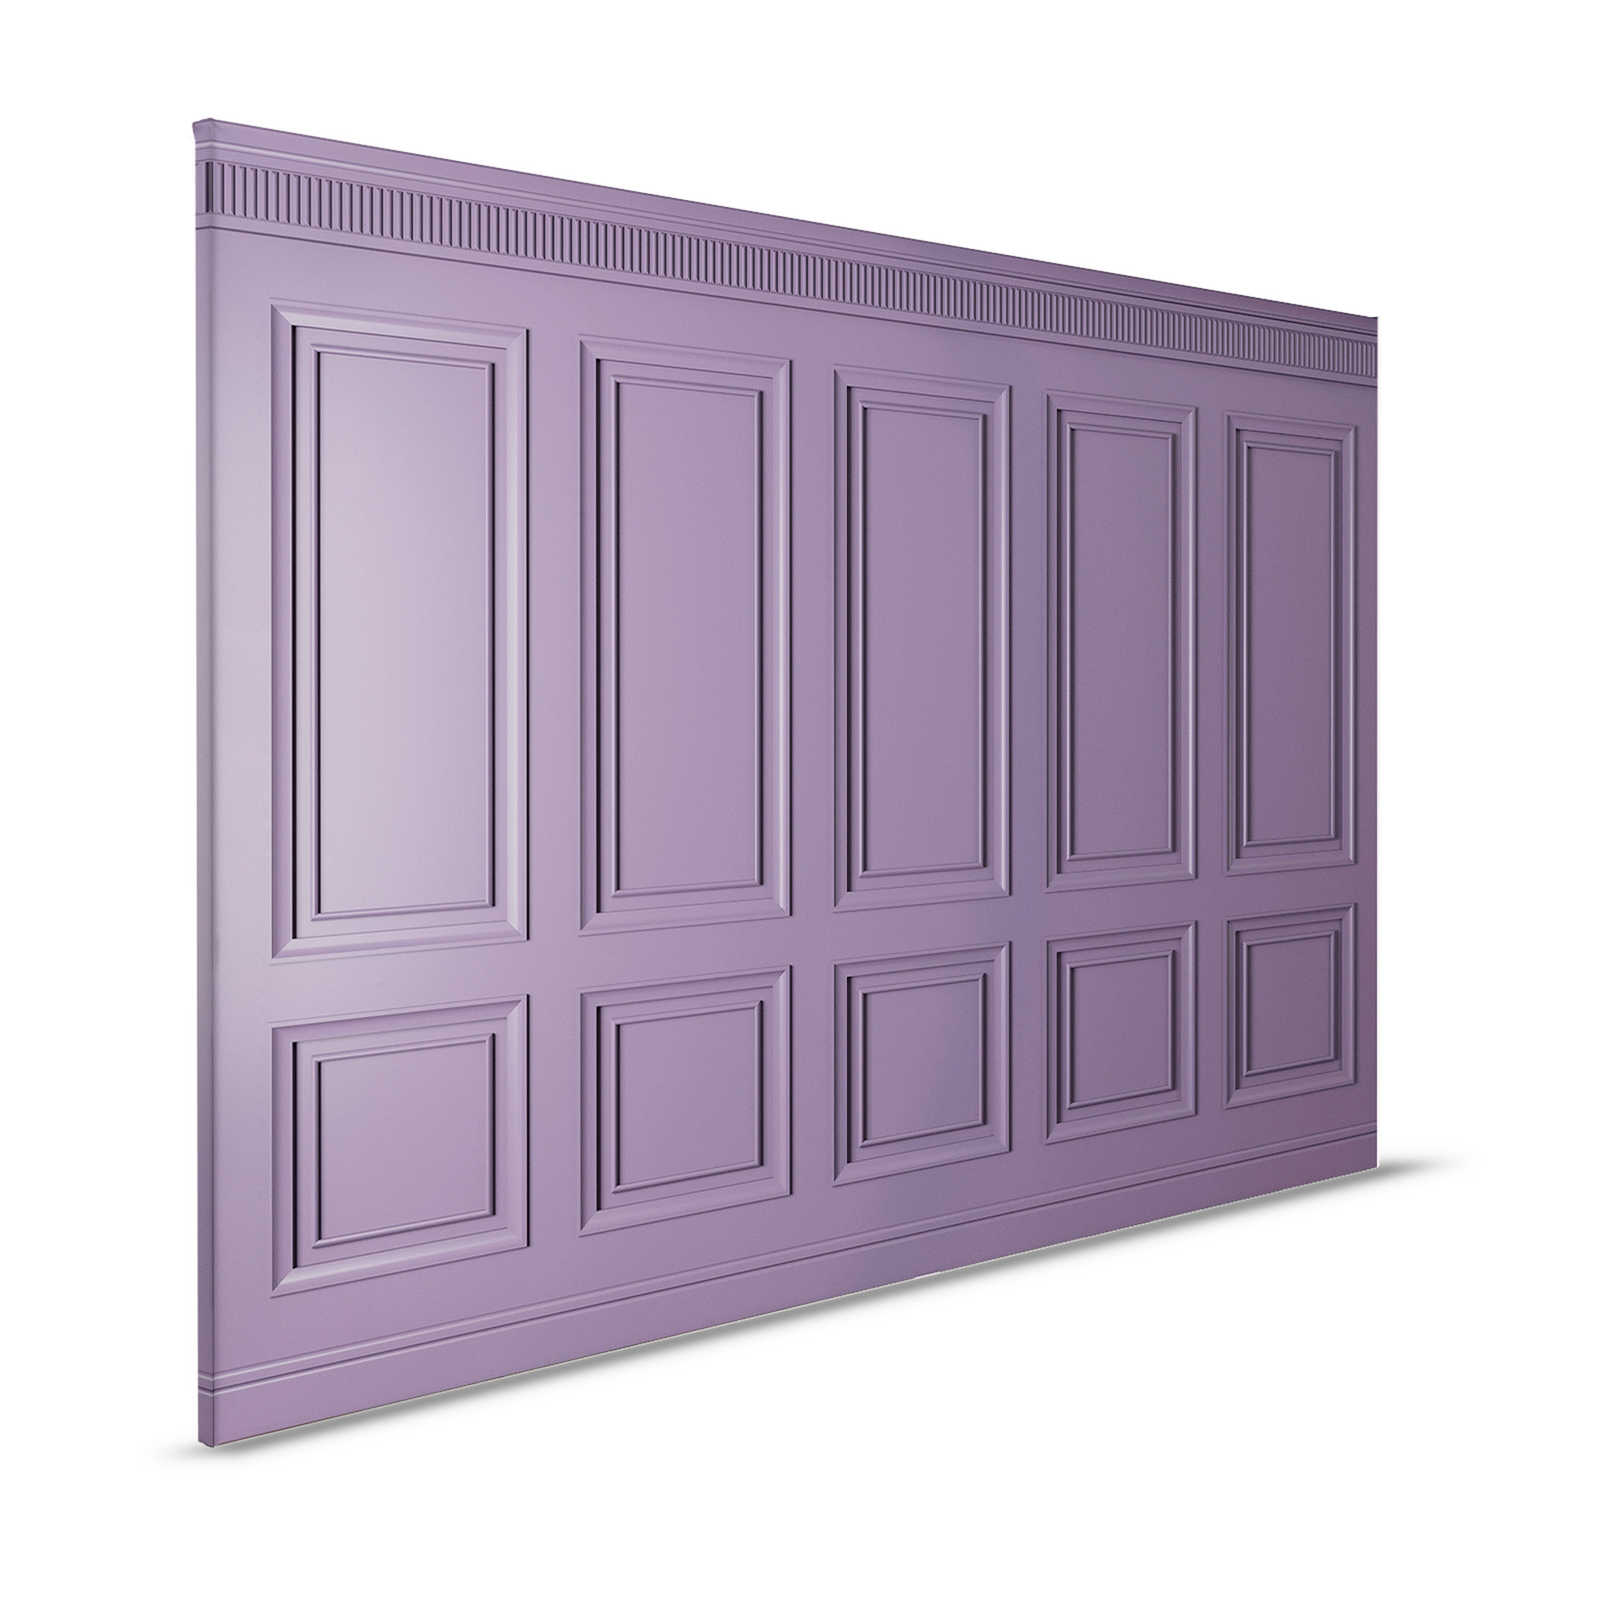 Kensington 3 - 3D toile lambris bois violet foncé, violet - 1,20 m x 0,80 m
